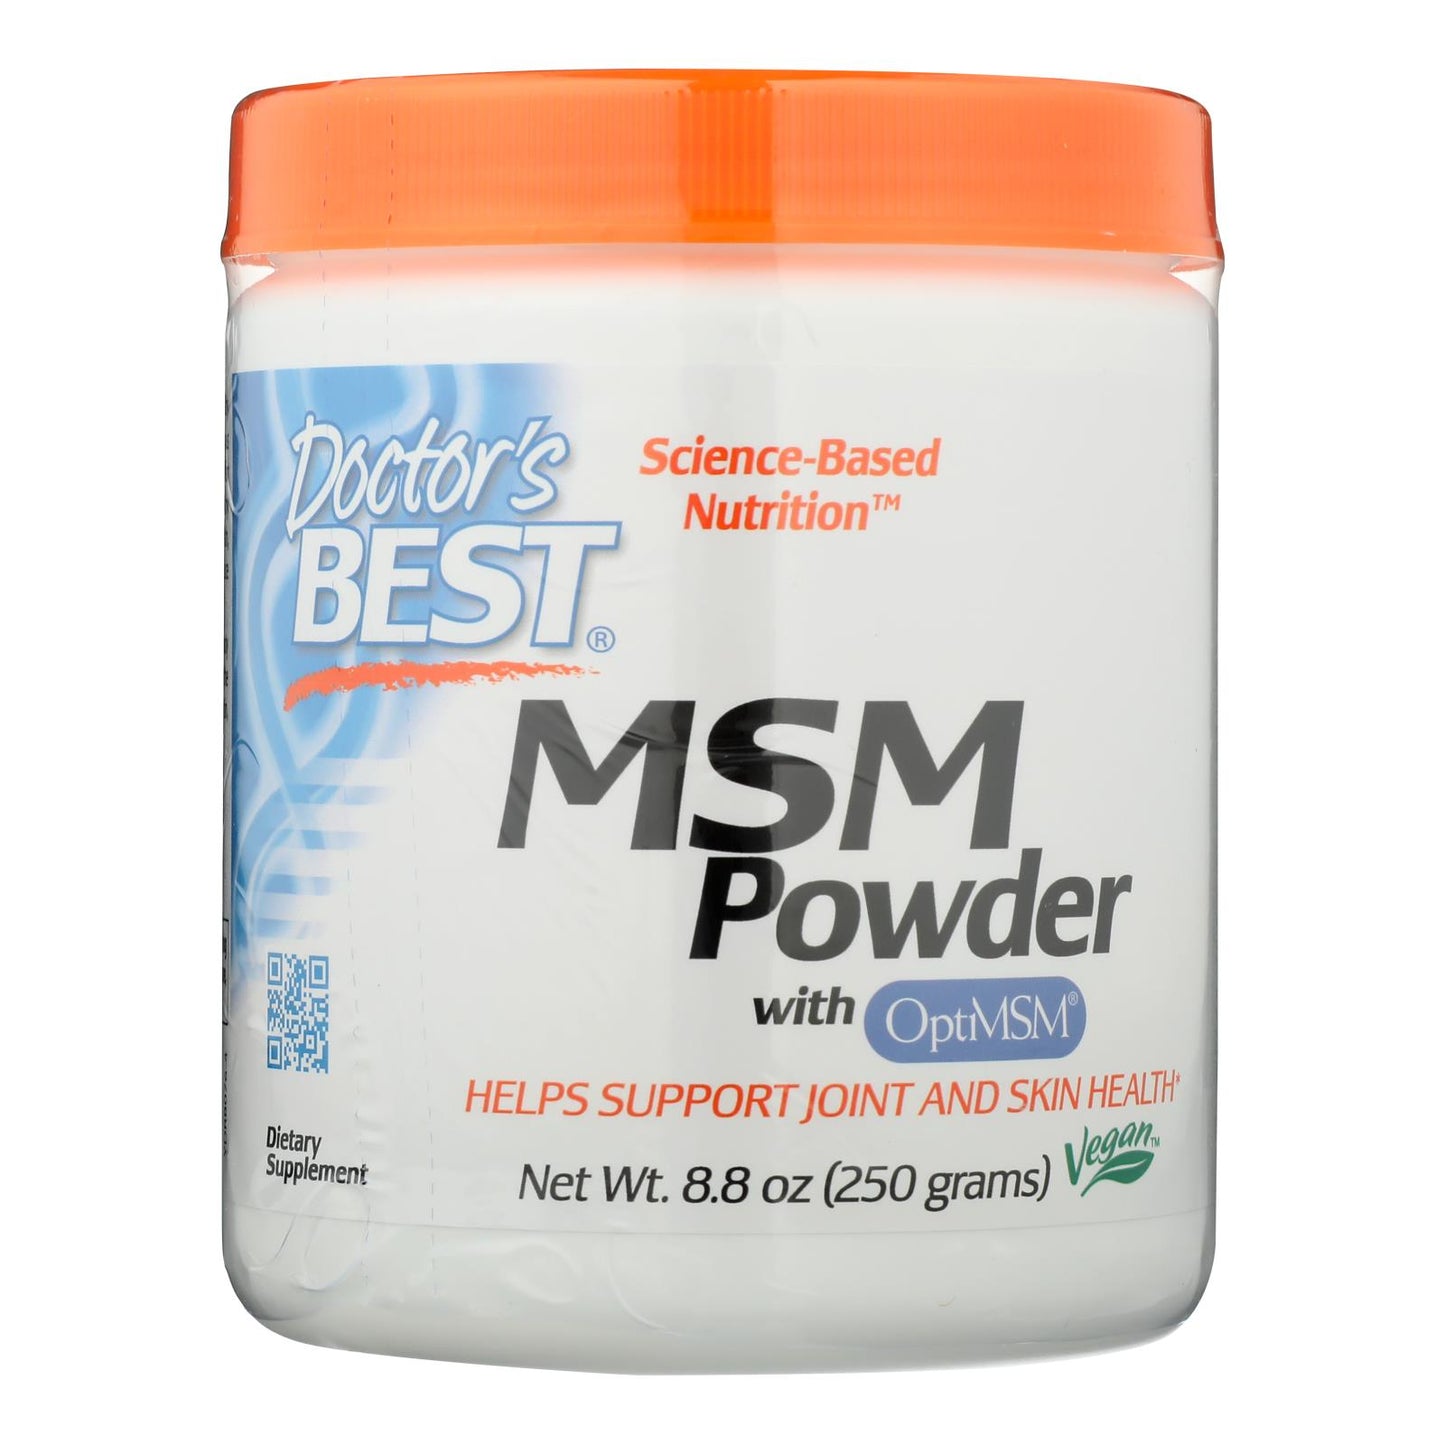 Doctor's Best - Msm Powder - 1 Each-250 Gram